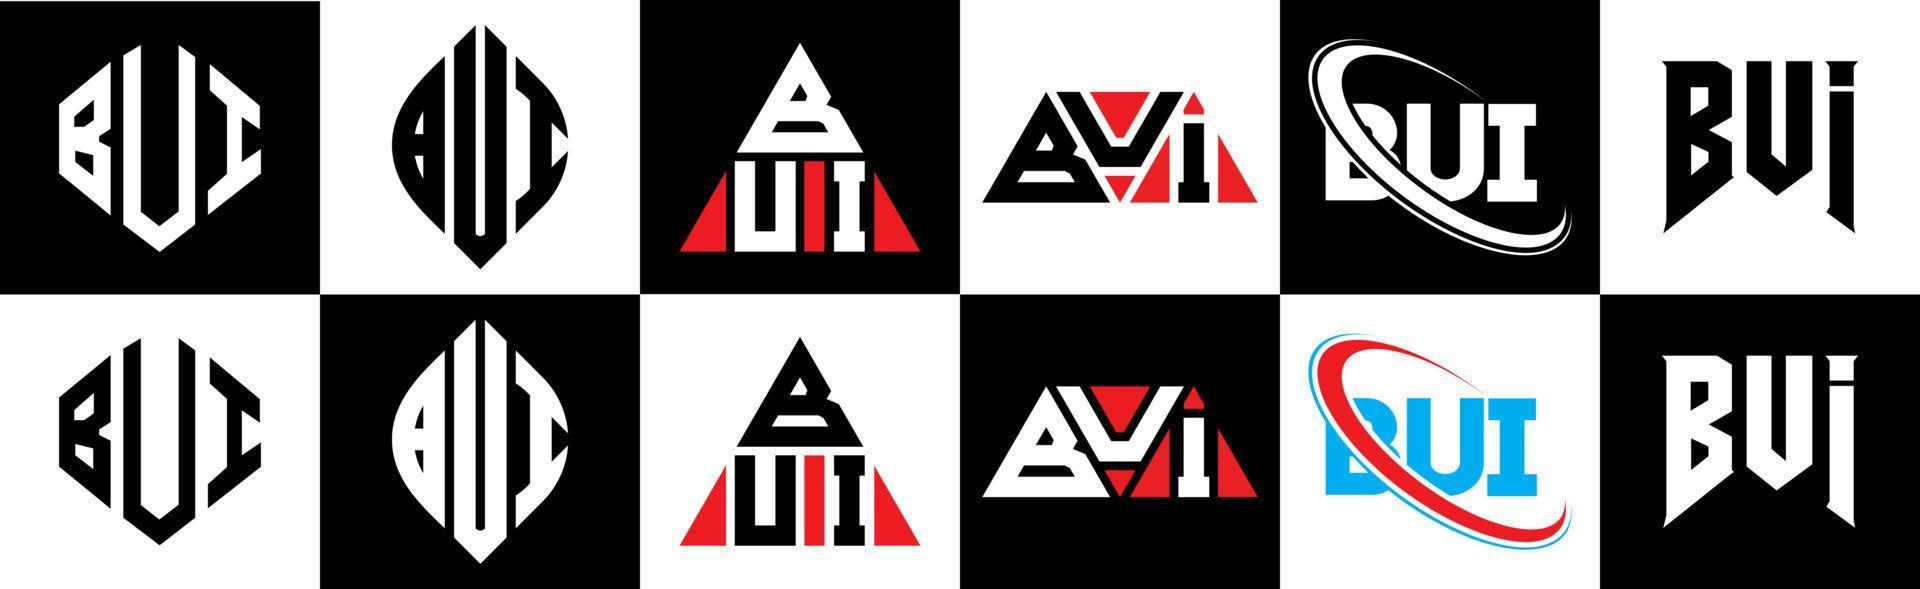 Bui-Buchstaben-Logo-Design in sechs Stilen. Bui-Polygon, Kreis, Dreieck, Sechseck, flacher und einfacher Stil mit schwarz-weißem Buchstabenlogo in einer Zeichenfläche. Bui minimalistisches und klassisches Logo vektor